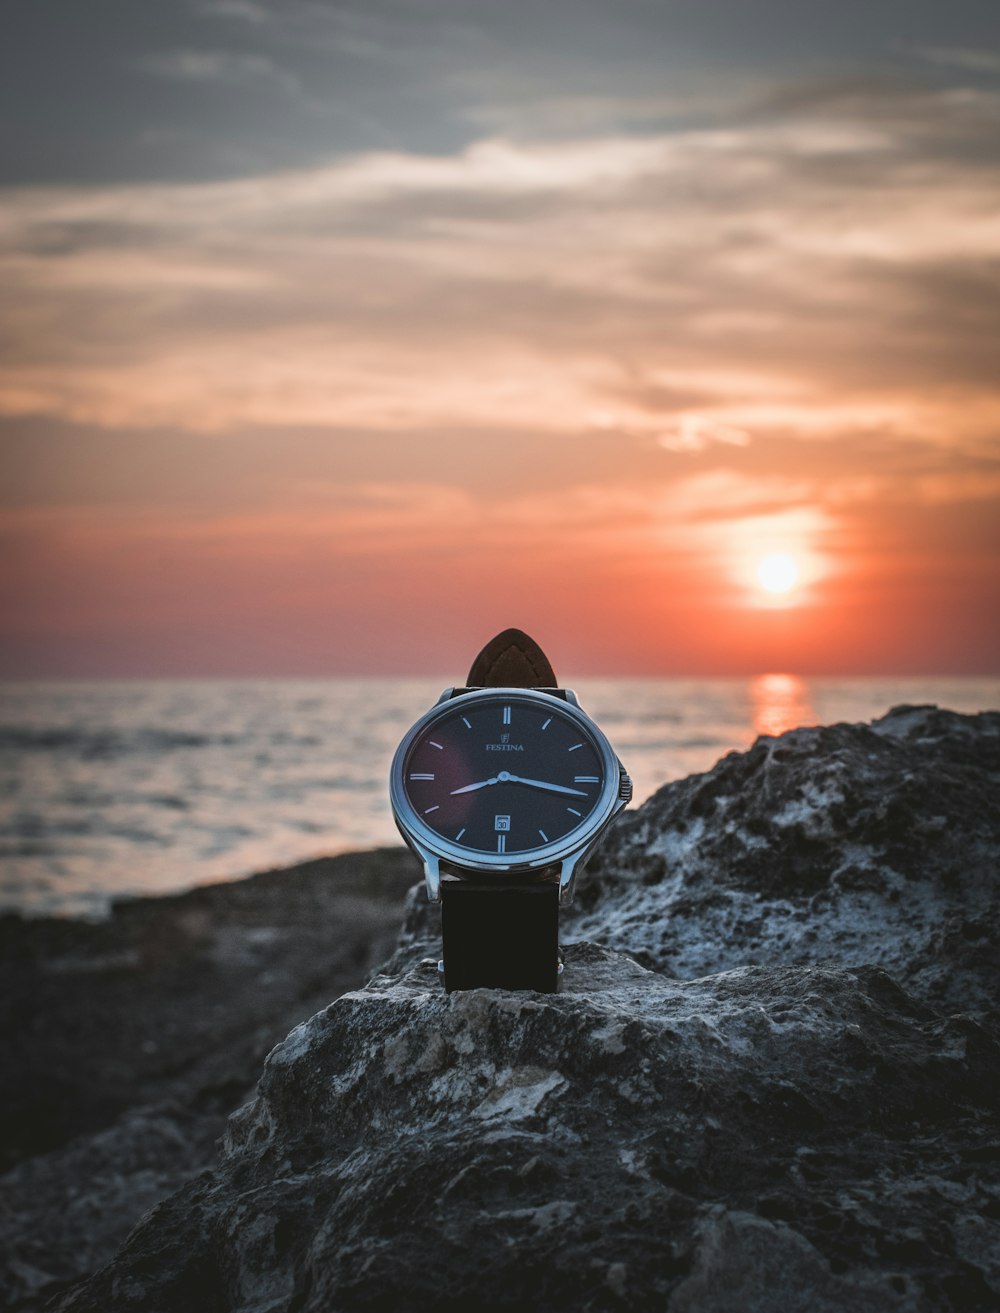 Reloj redondo de color plateado en estante durante la puesta del sol